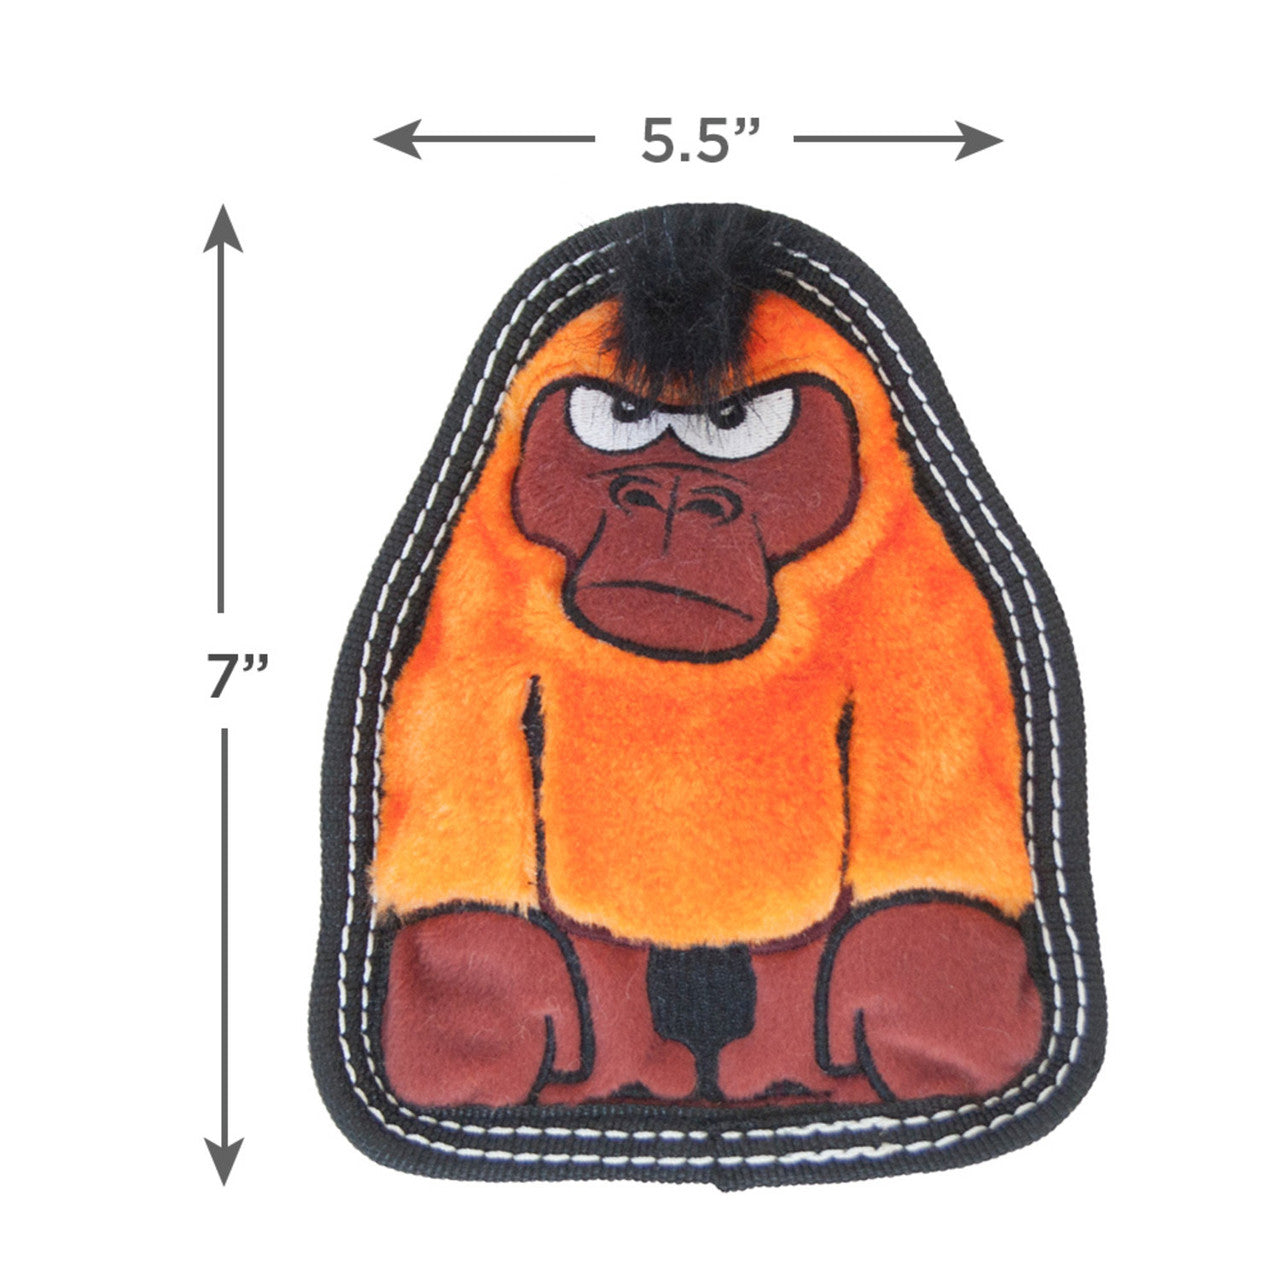 Outward Hound Tough Seamz  Gorilla Small  |  No-Stuffing Squeaky Plush Toy